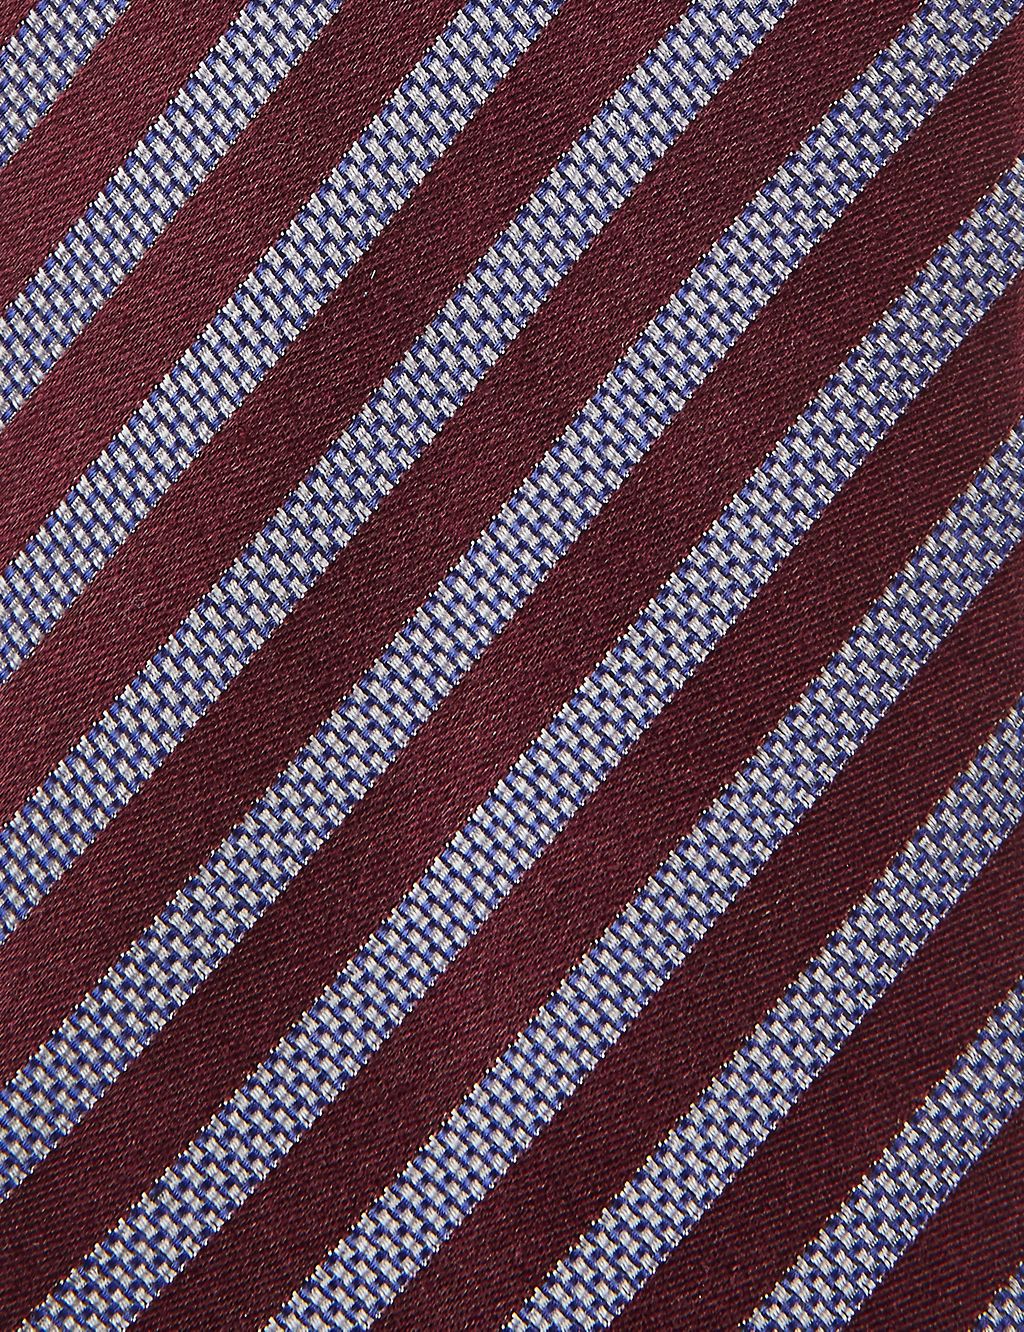 Pure Silk Striped Tie 2 of 3